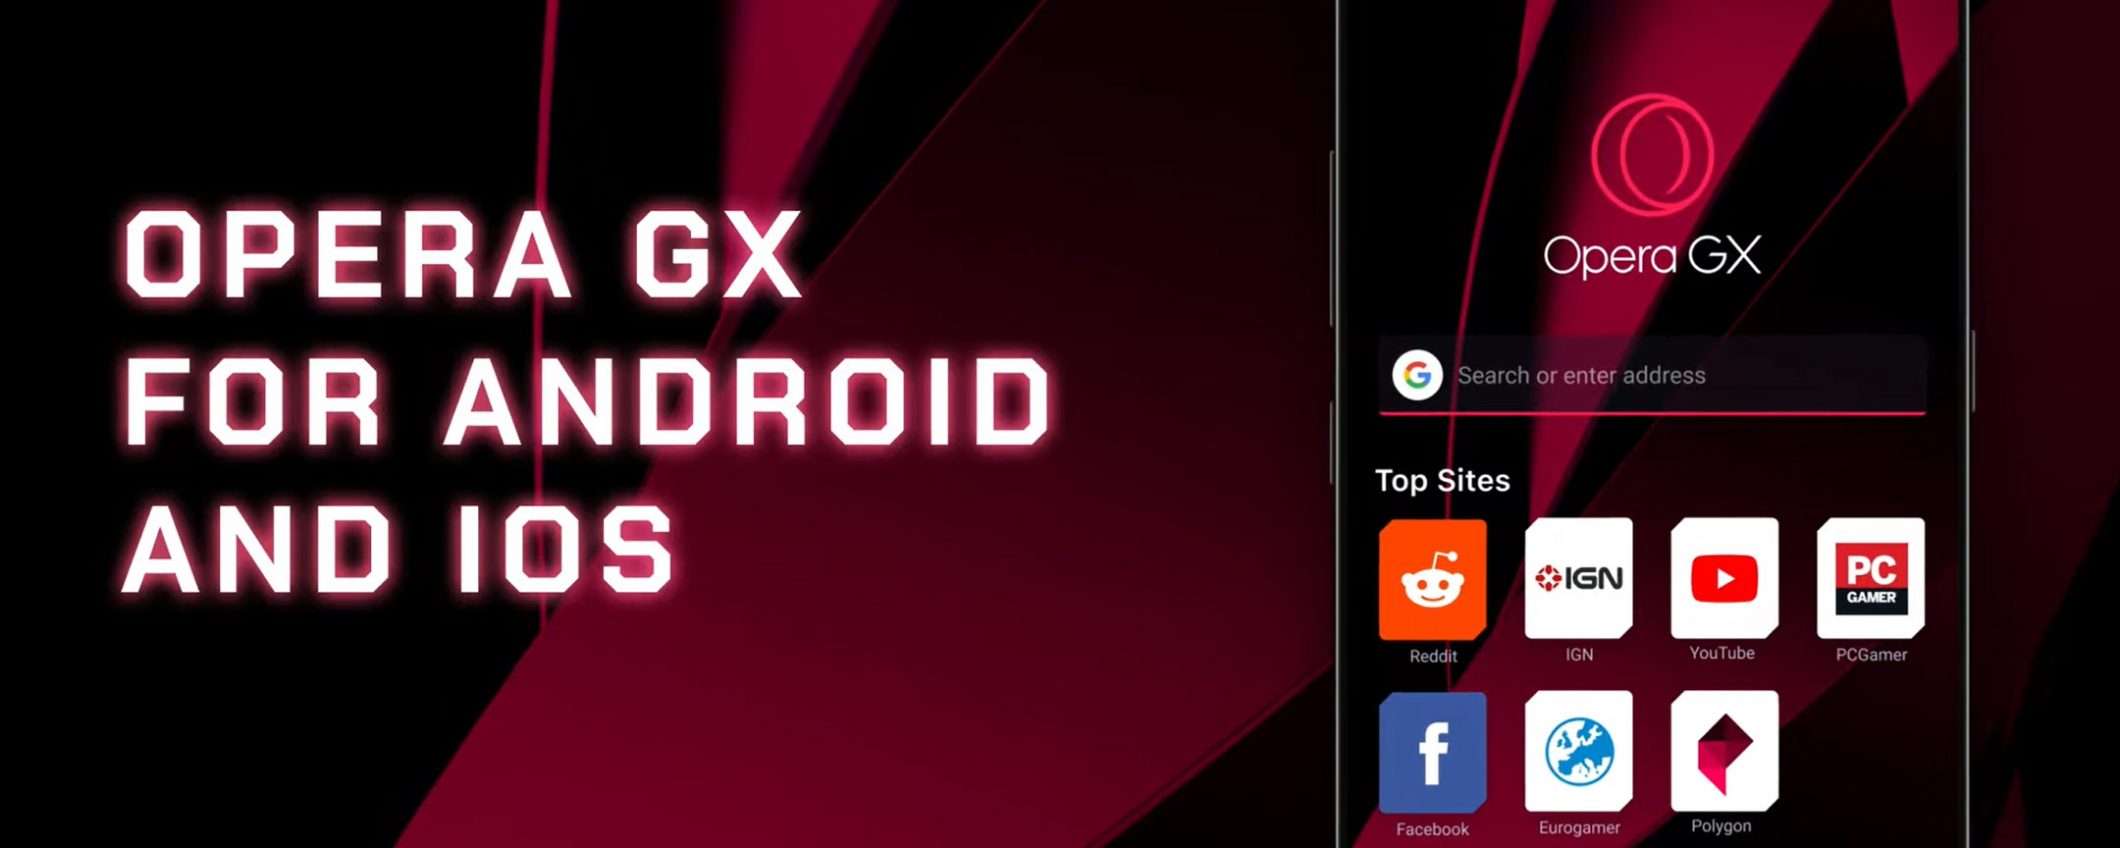 Il browser Opera GX arriva su Android e iOS